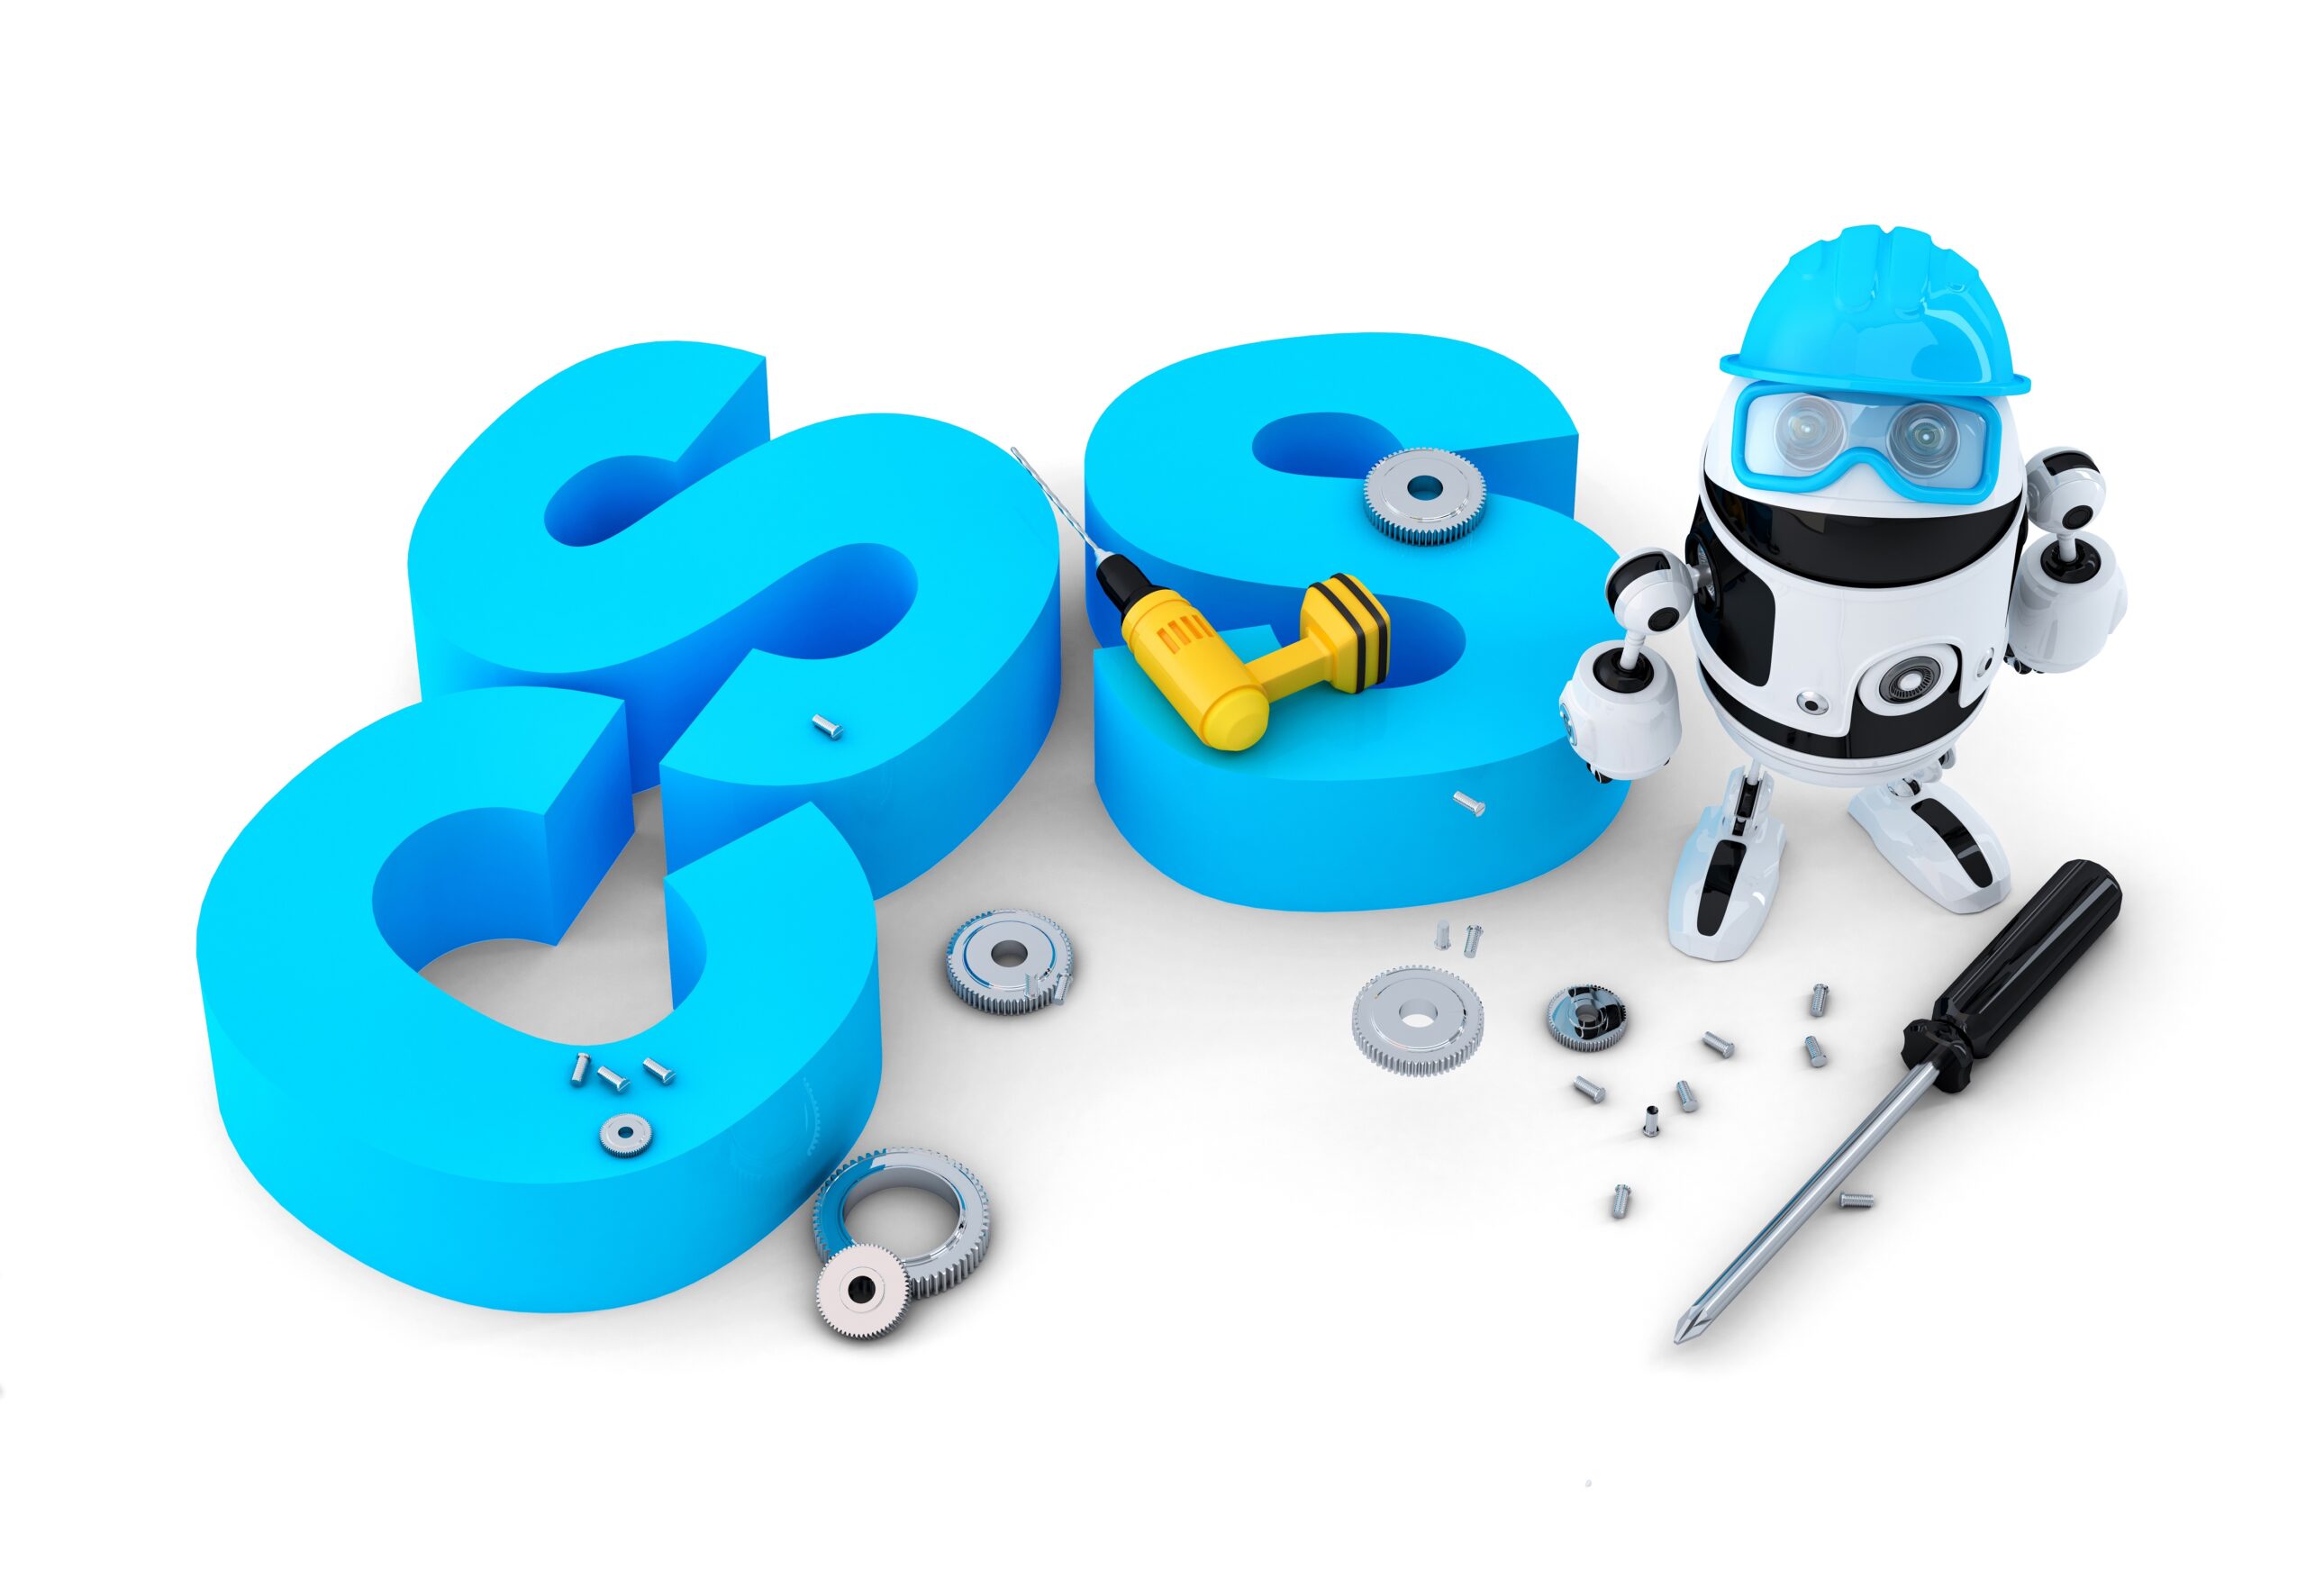 白い背景に青い文字のCSSというブロックと帽子をかぶったロボットが並んでいる